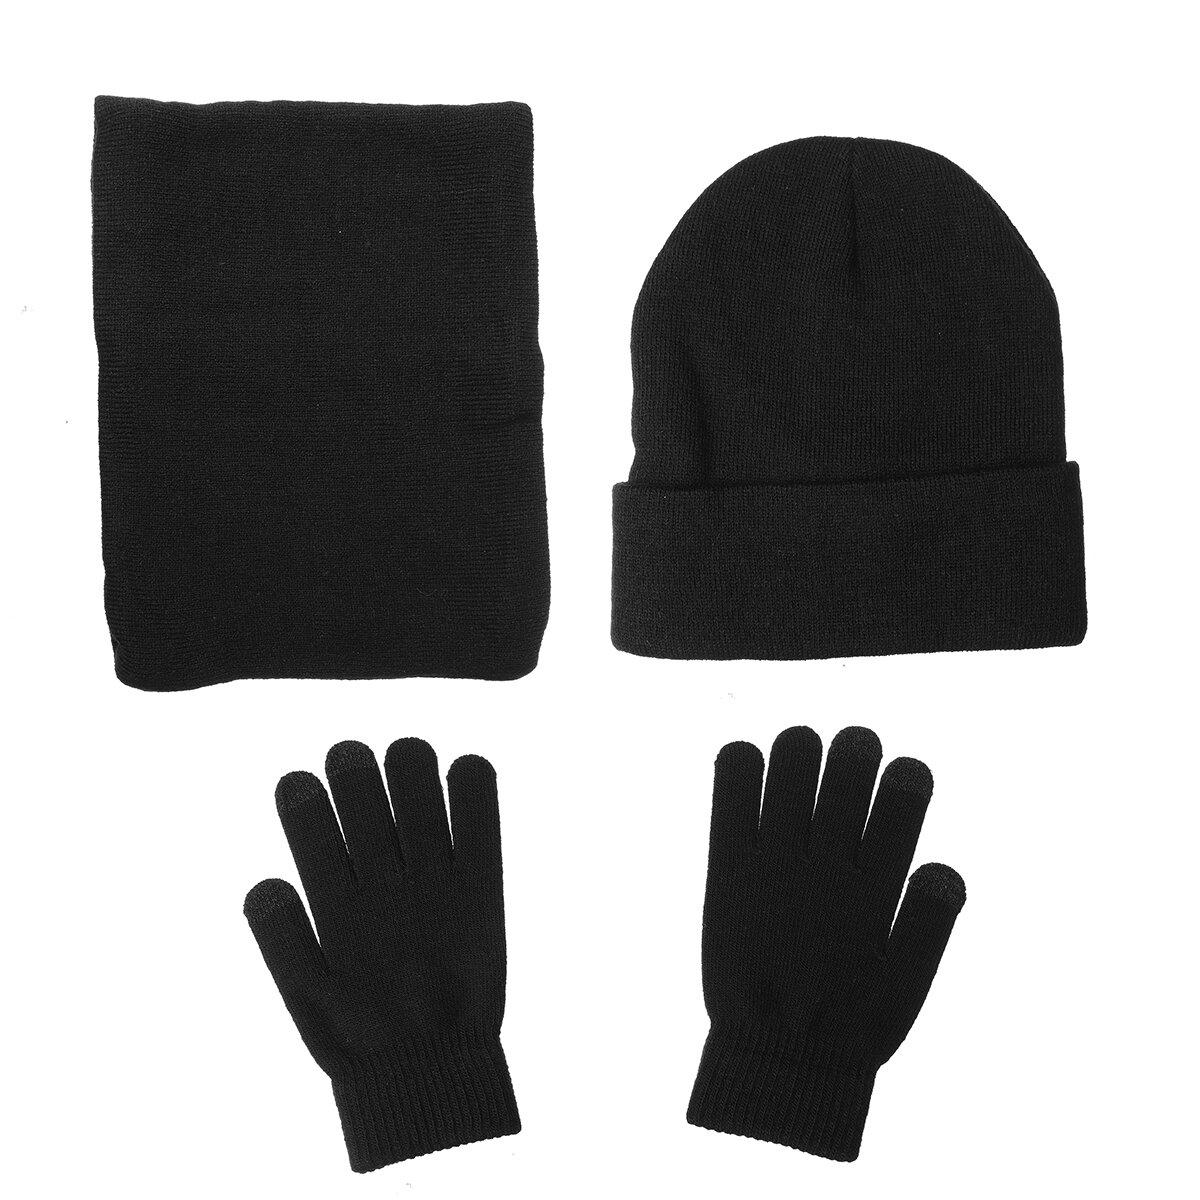 3 IN 1 Winter Beanie Muts Gebreide Sjaal Set Cap + Touch Screen Ski Dikke Handschoenen